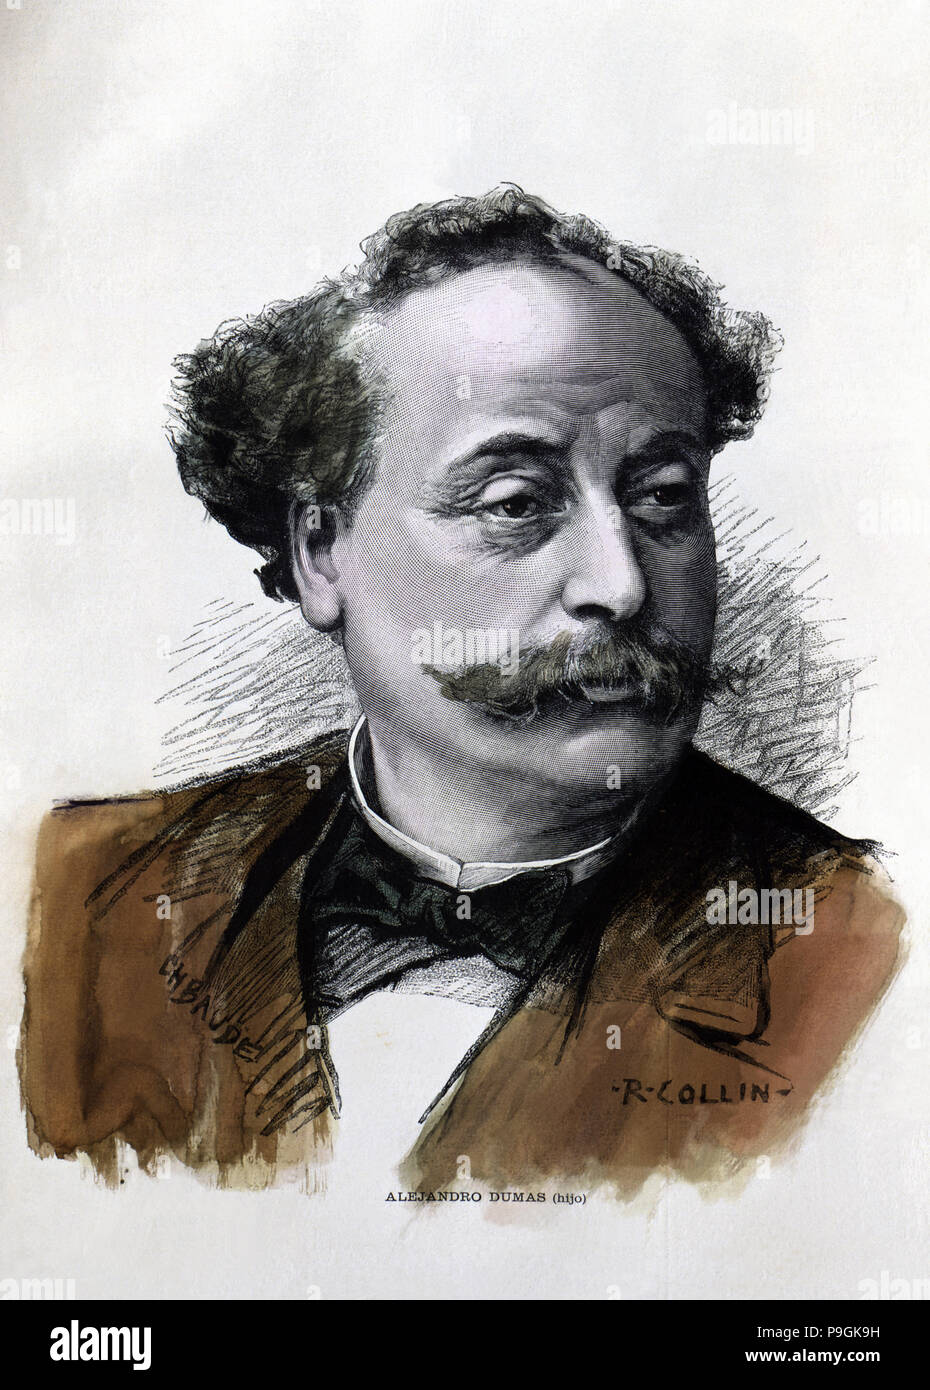 Alexandre Dumas (fils) (1824-1896), écrivain français, gravure, 1895. Banque D'Images